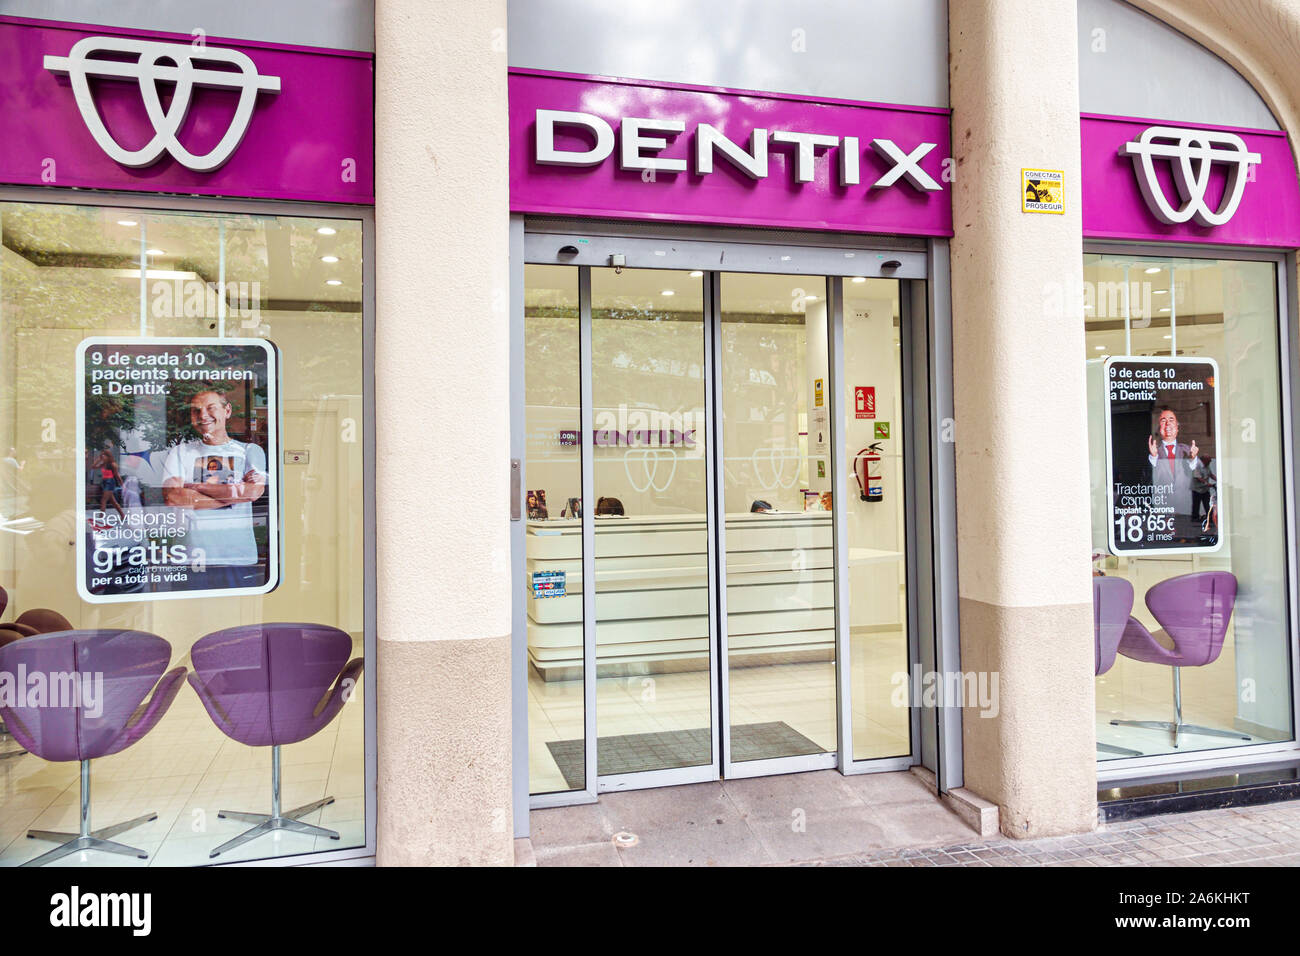 Barcellona Spagna,Catalonia El Poblenou,Rambla del Poblenou,Dentix,clinica dentale,esterno,ingresso anteriore,ES190820090 Foto Stock